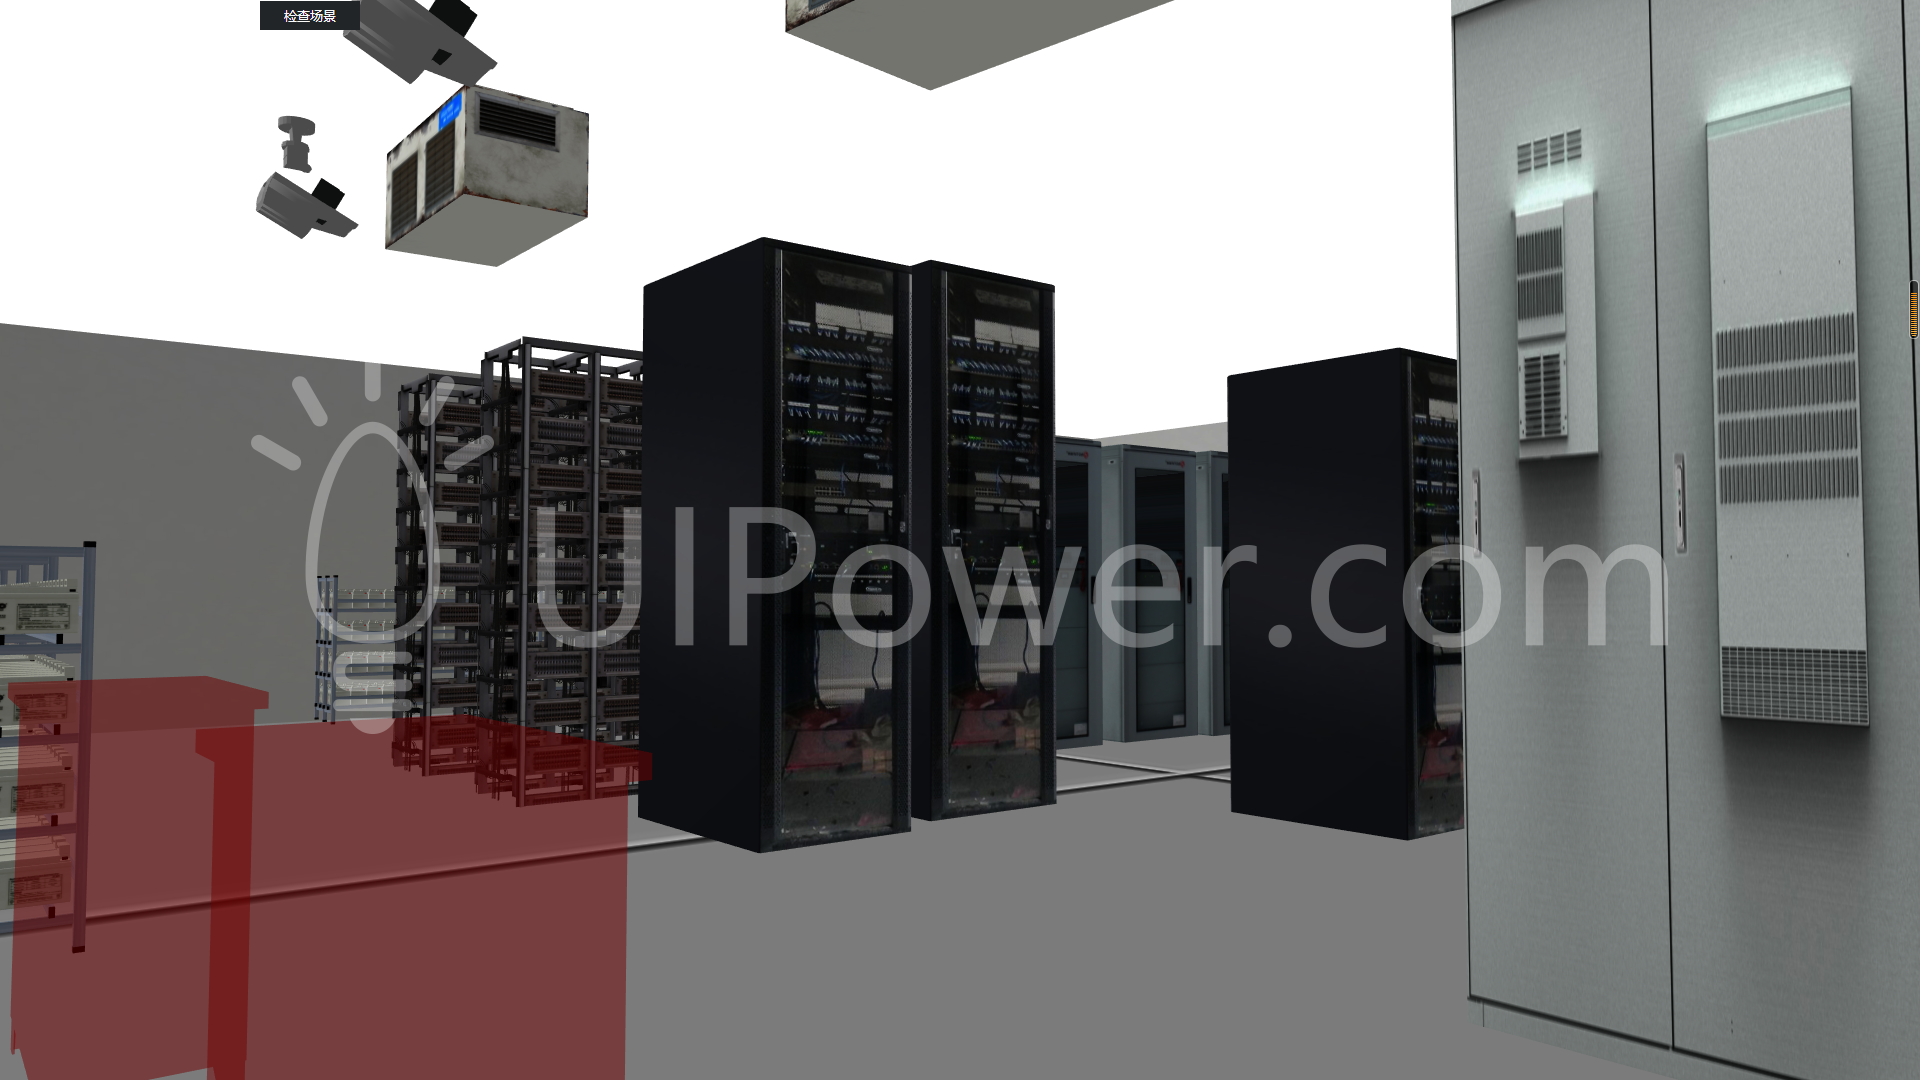 UIPower案列-PUI3DCreatorScenario